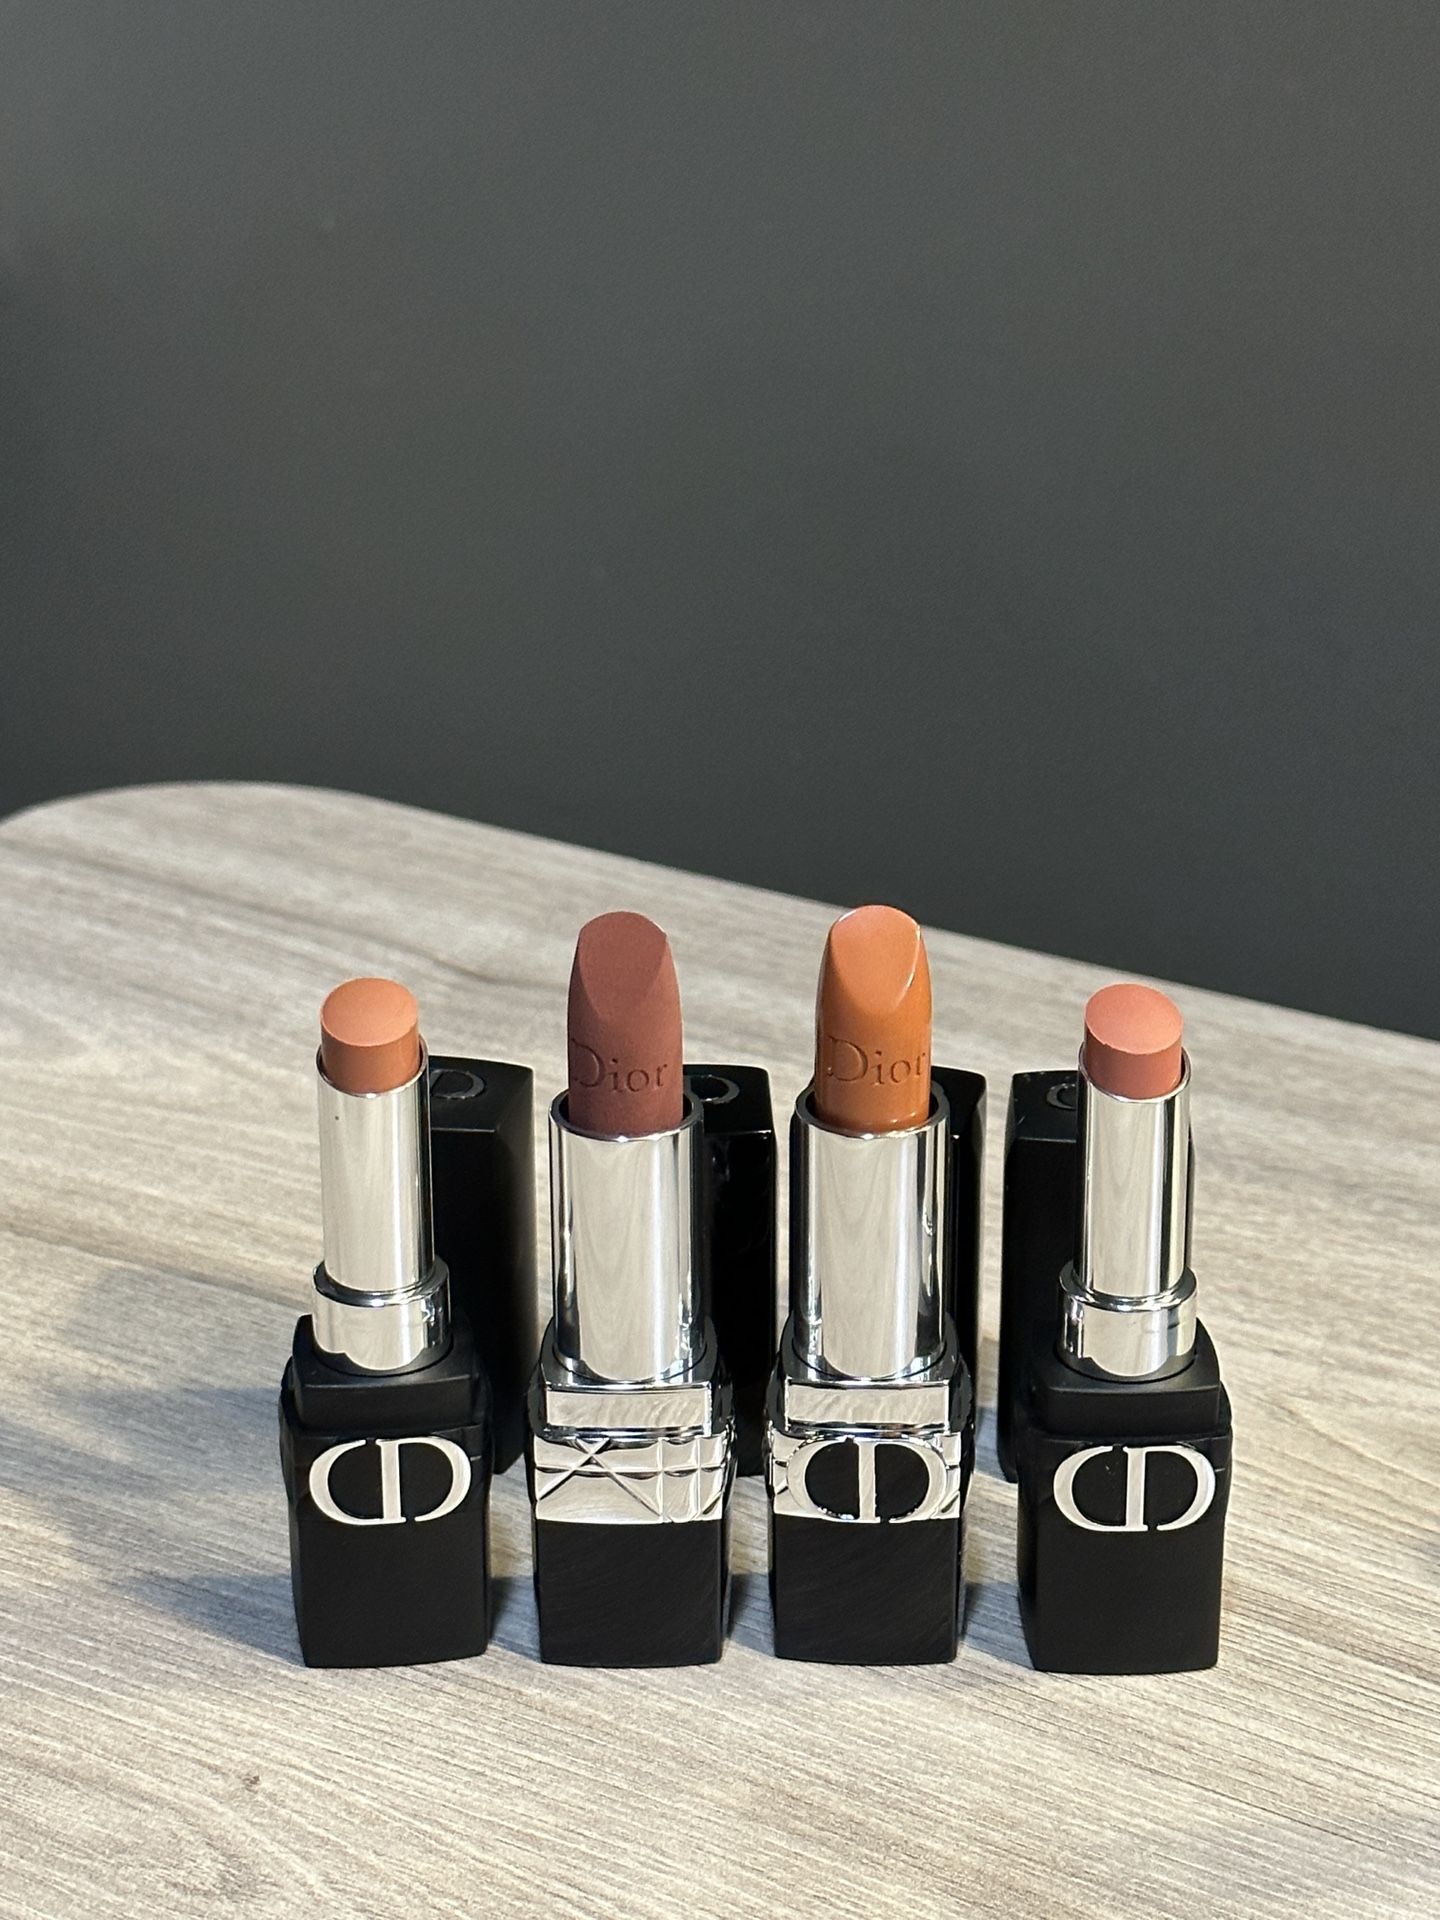 Dior Lipsticks $20 For Each